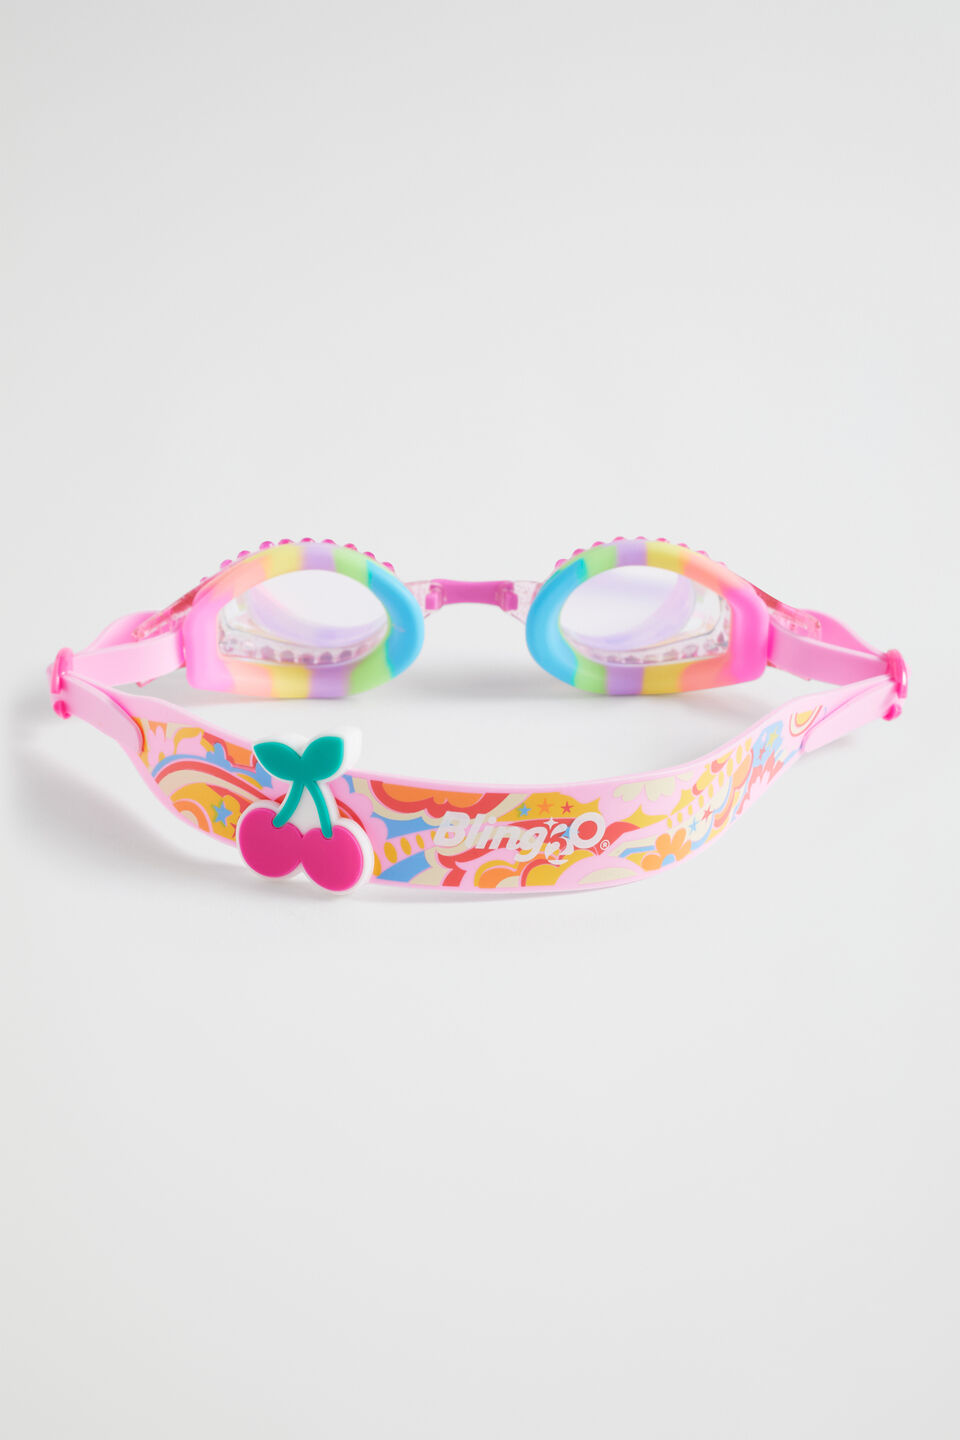 Crystal Rainbow Goggles  Multi